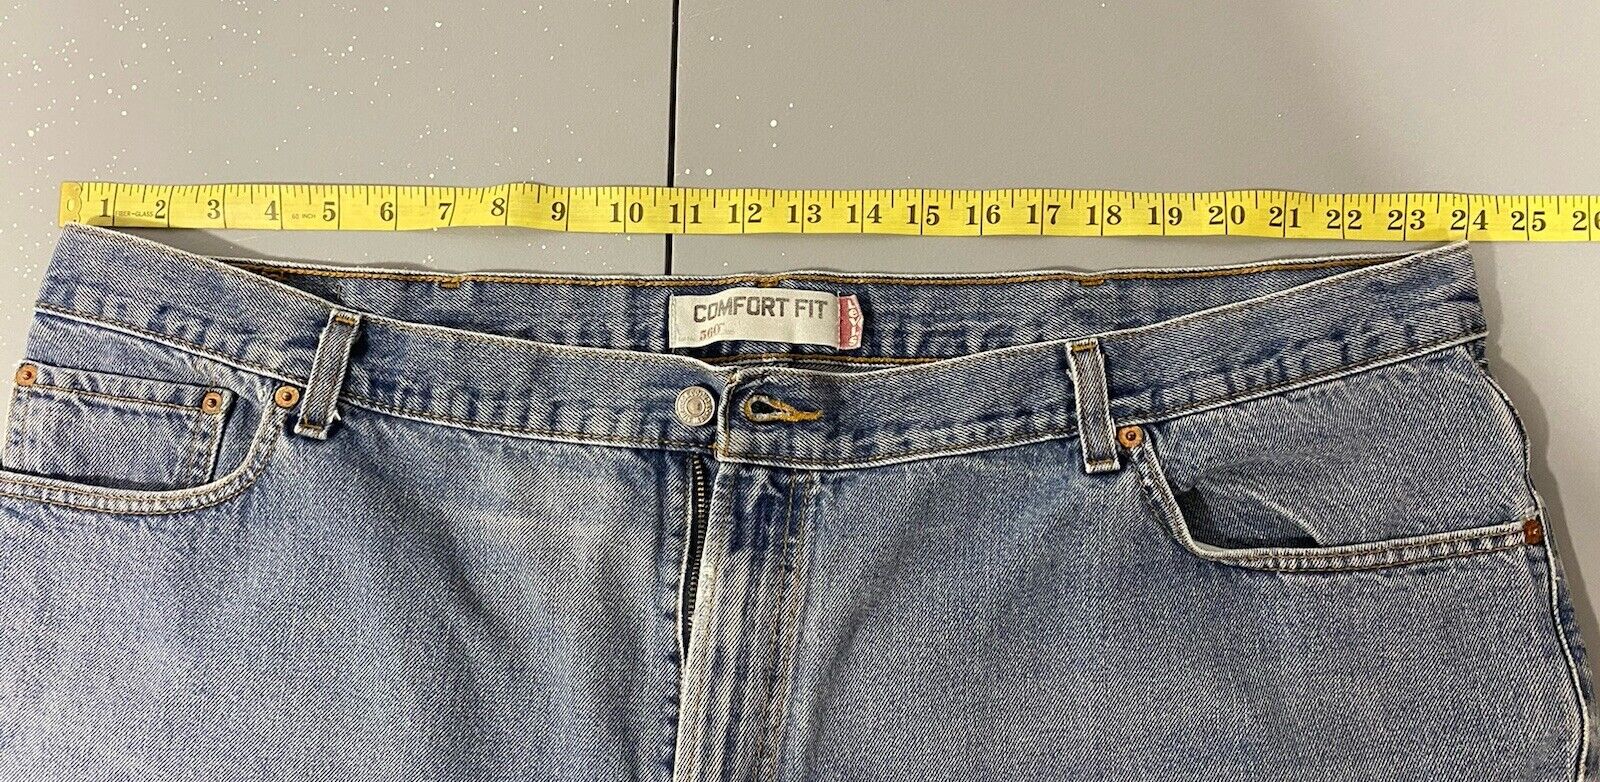 Levi's 560 Comfort Fit Jeans  48x30 (Actual Insea… - image 16